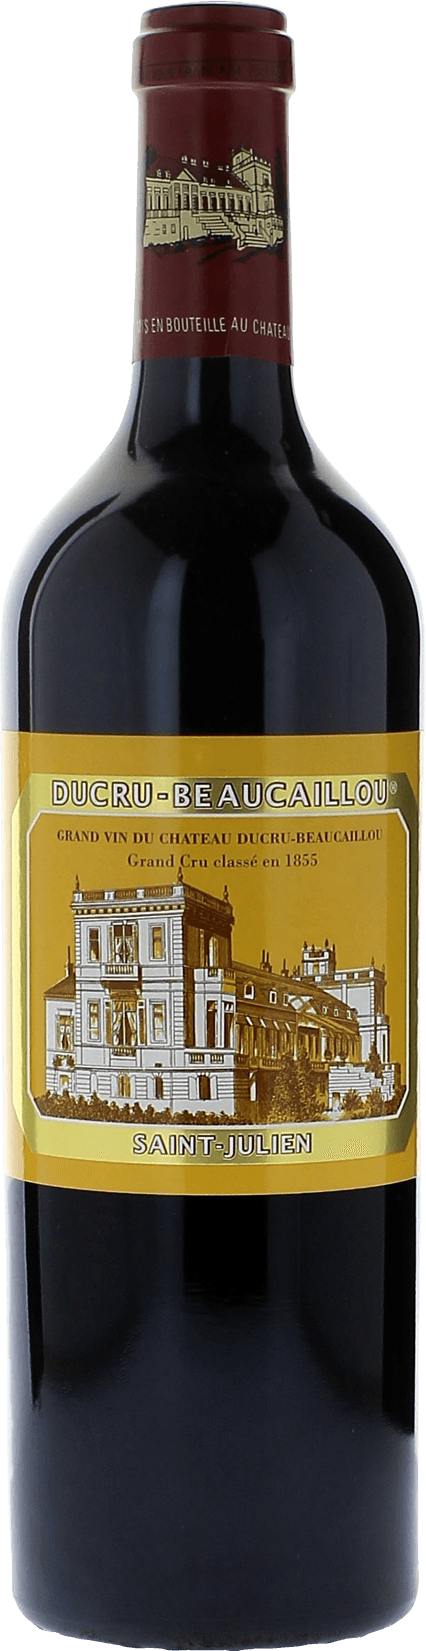 Ducru beaucaillou 1982 2me Grand cru class Saint-Julien, Bordeaux rouge